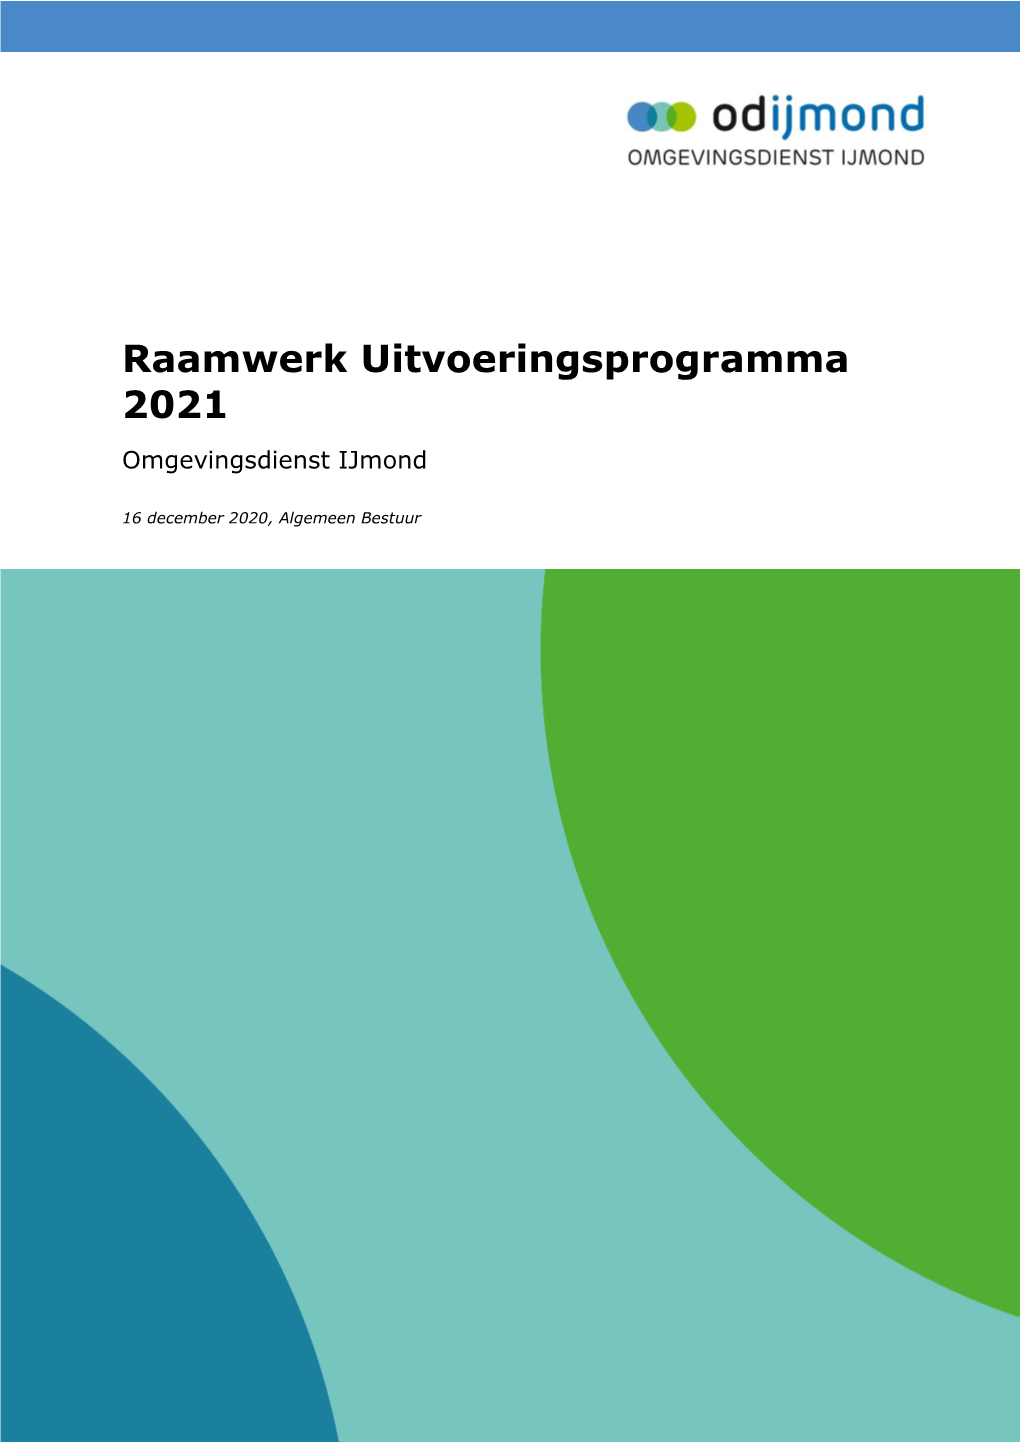 Raamwerk Uitvoeringsprogramma 2021